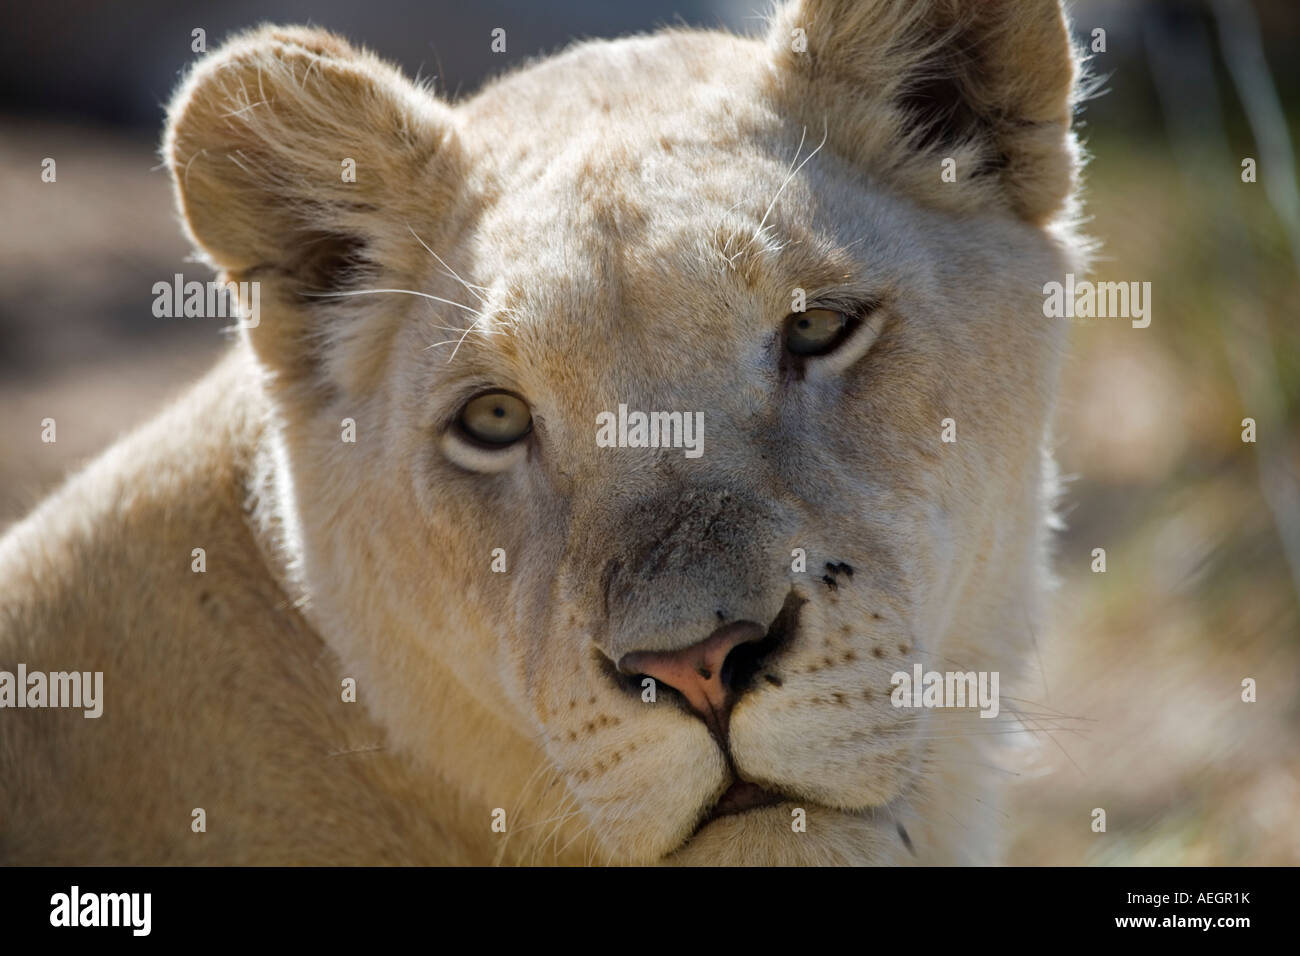 White Lion.Head shot Stock Photo